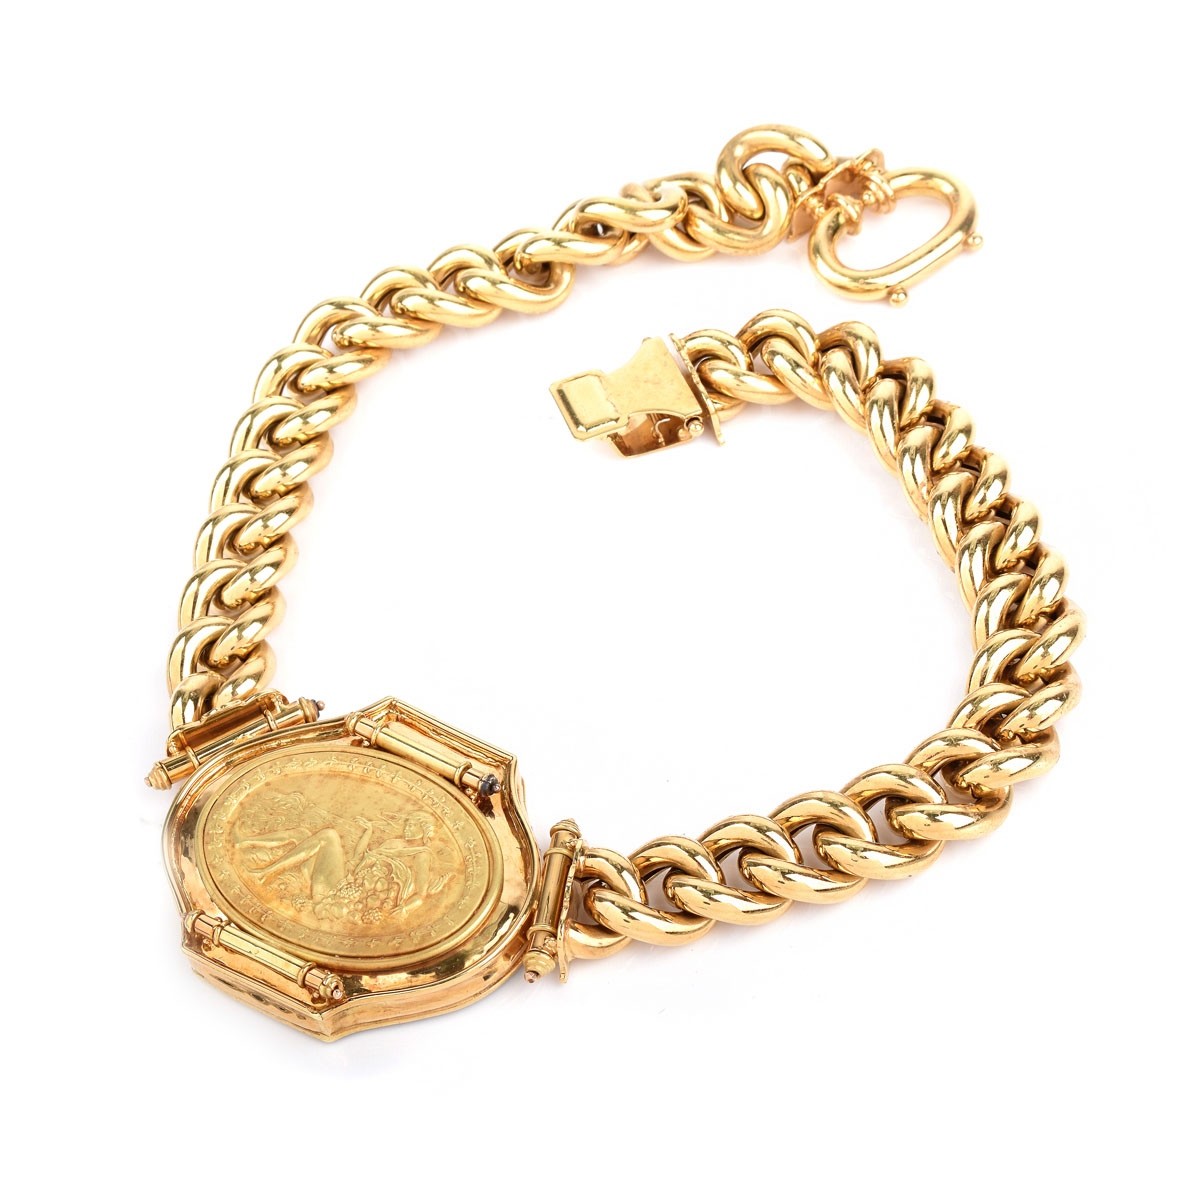 Vintage Italian 18K Gold Link Necklace - Image 3 of 4